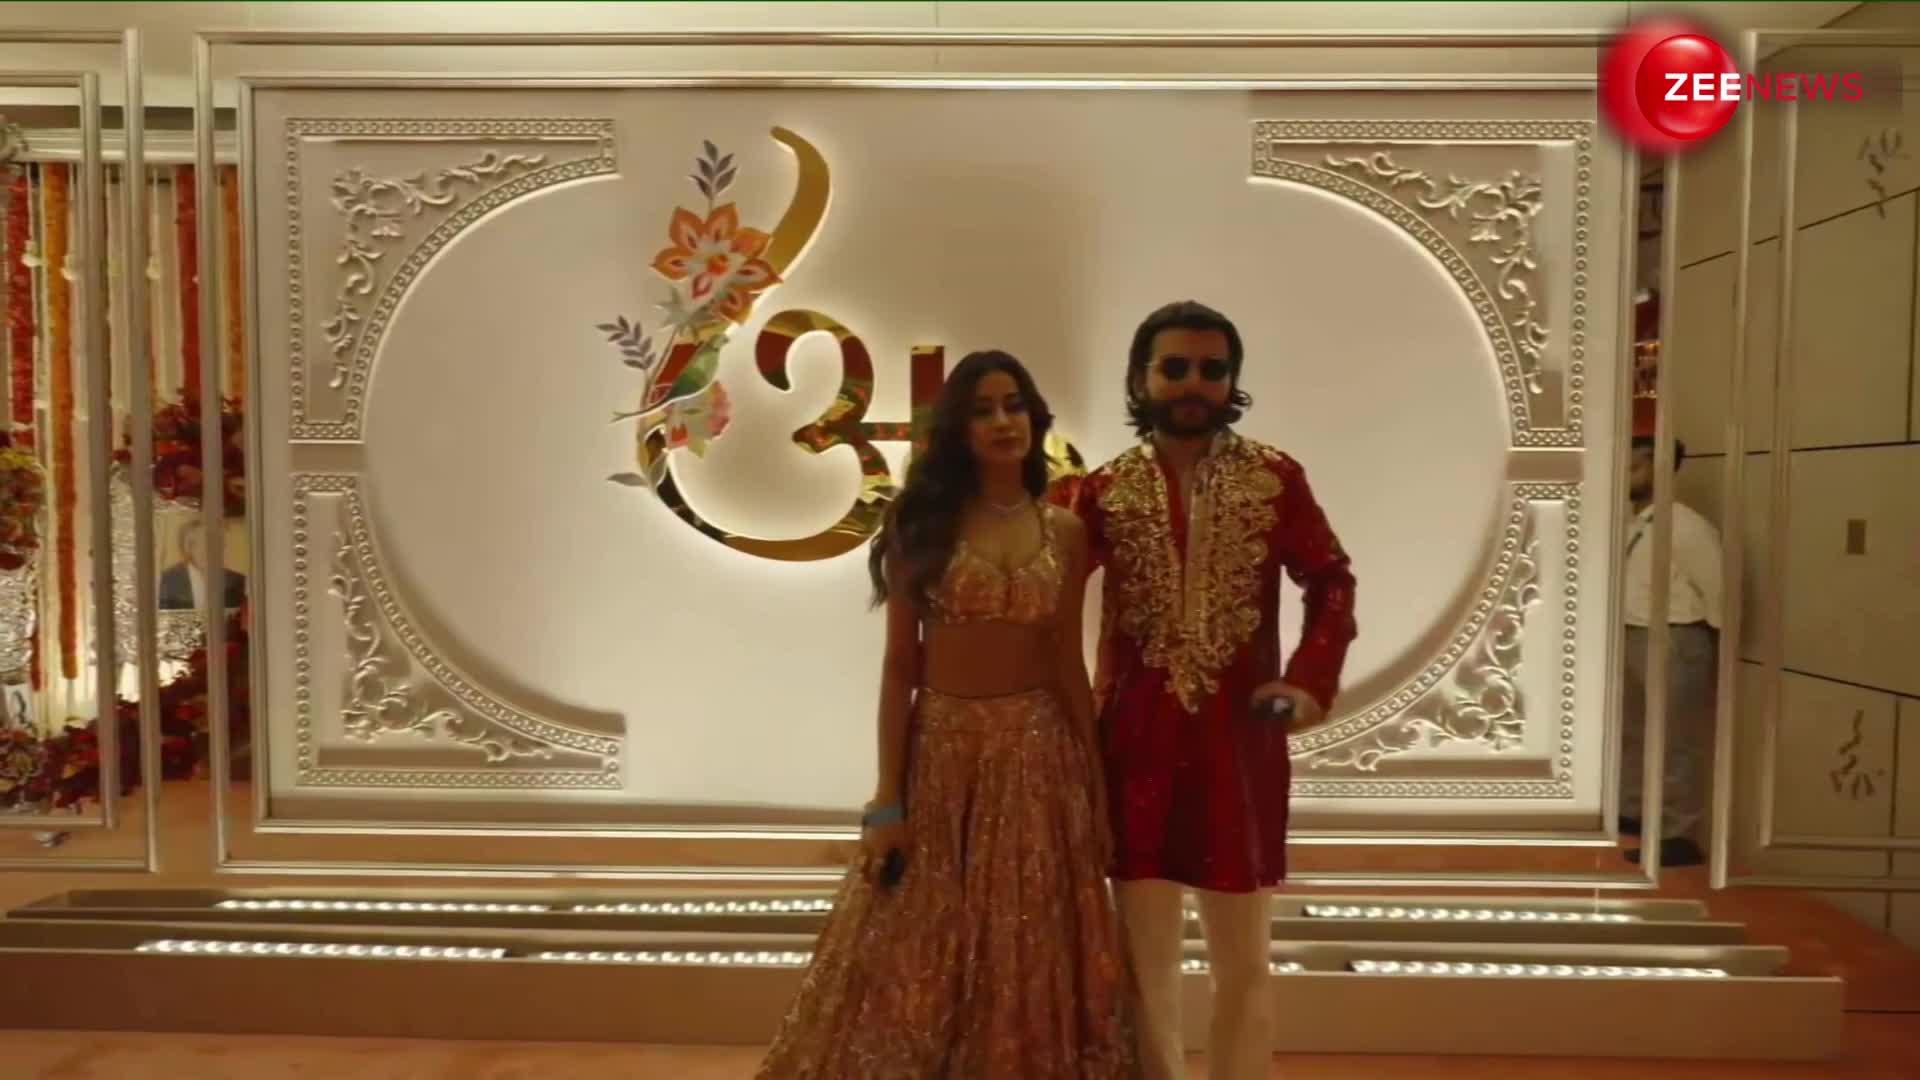 अंनत-राधिका की शादी में पहुंचीं Janhvi Kapoor, रियूमर्ड बॉयफ्रेंड शिखर पहाड़िया संग दिए शानदार पोज- VIDEO